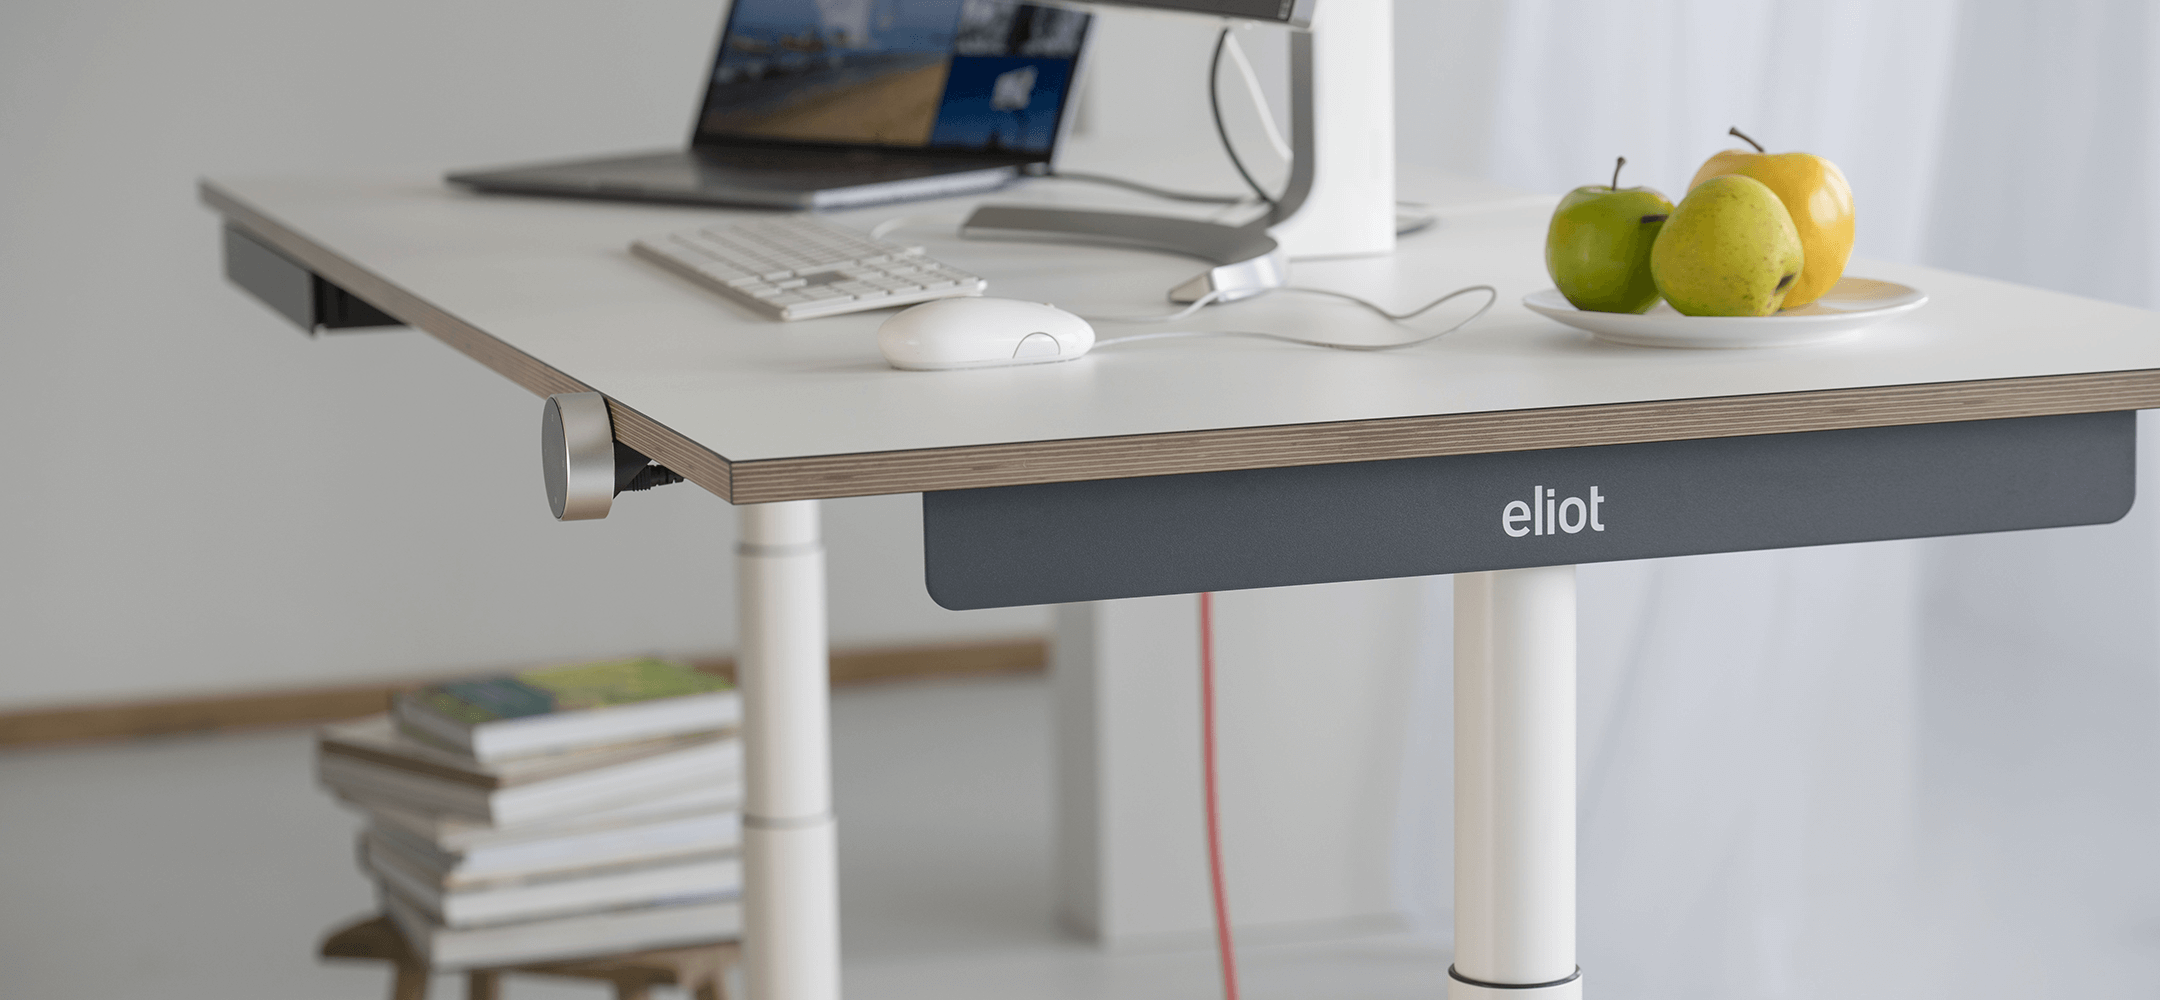 Höhenverstellbarer Schreibtisch Eliot Tiny im Halbprofil, darauf Obst und Computer